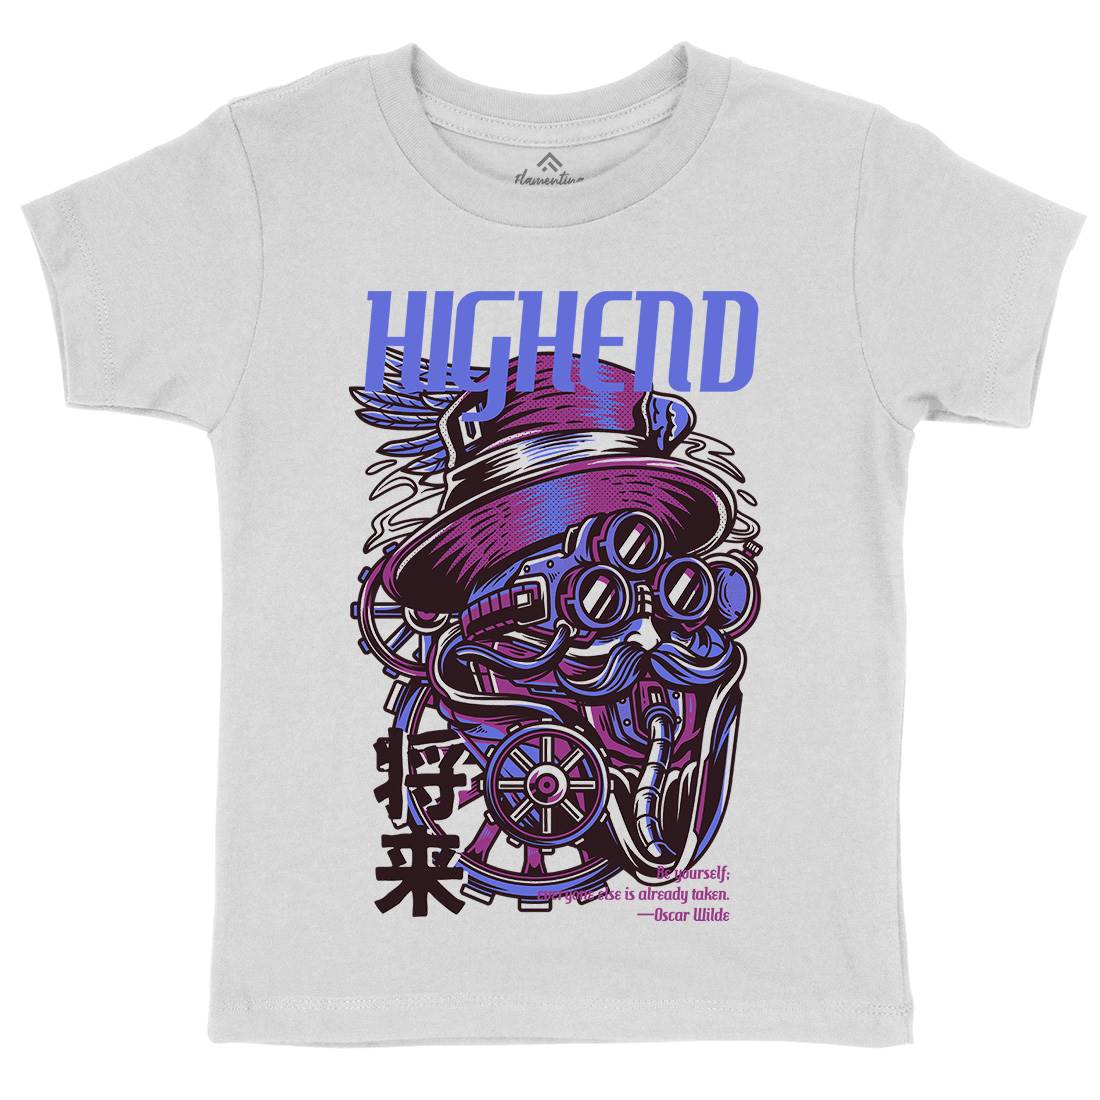 High End Kids Crew Neck T-Shirt Steampunk D610